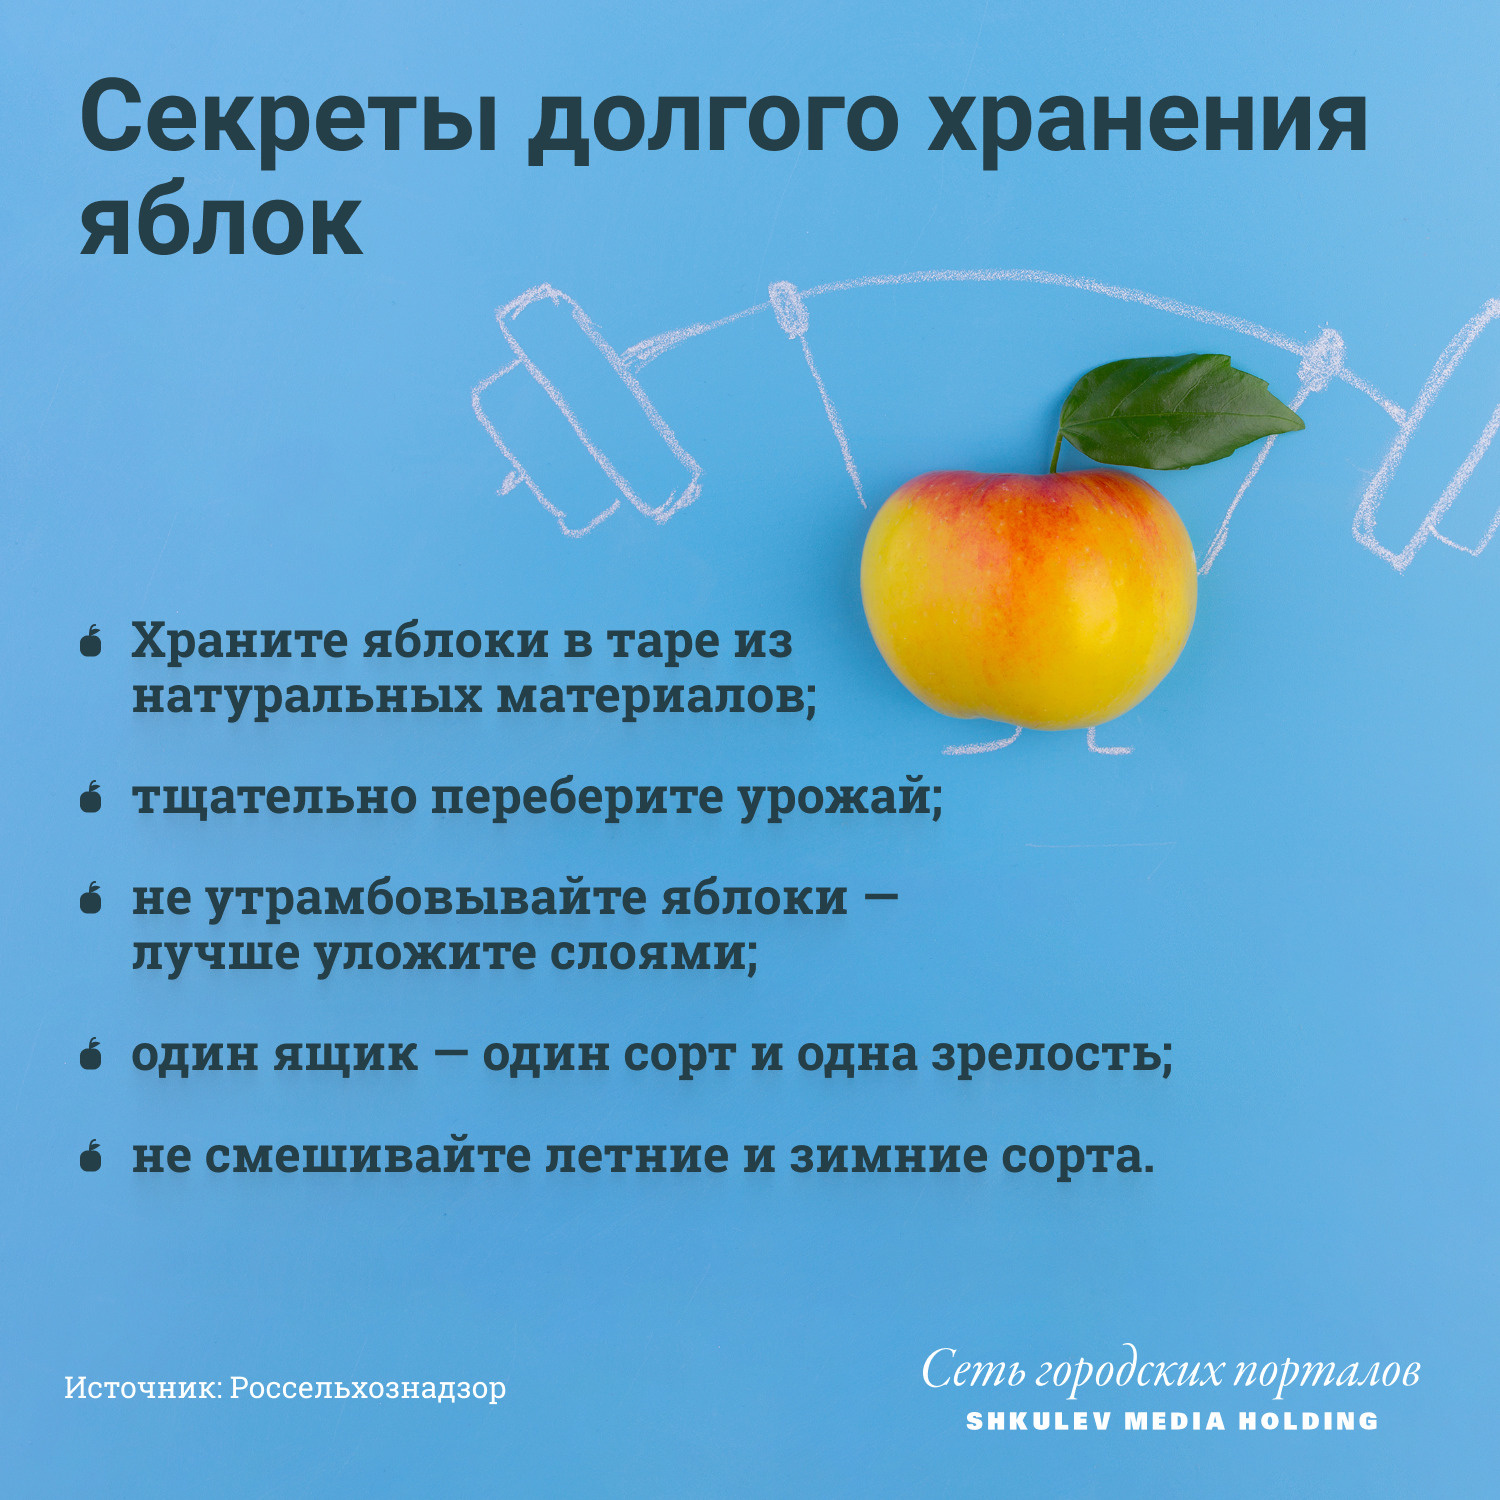 Яблочный спас: советы как правильно собирать и хранить урожай - 19 августа2021 - 74.ru